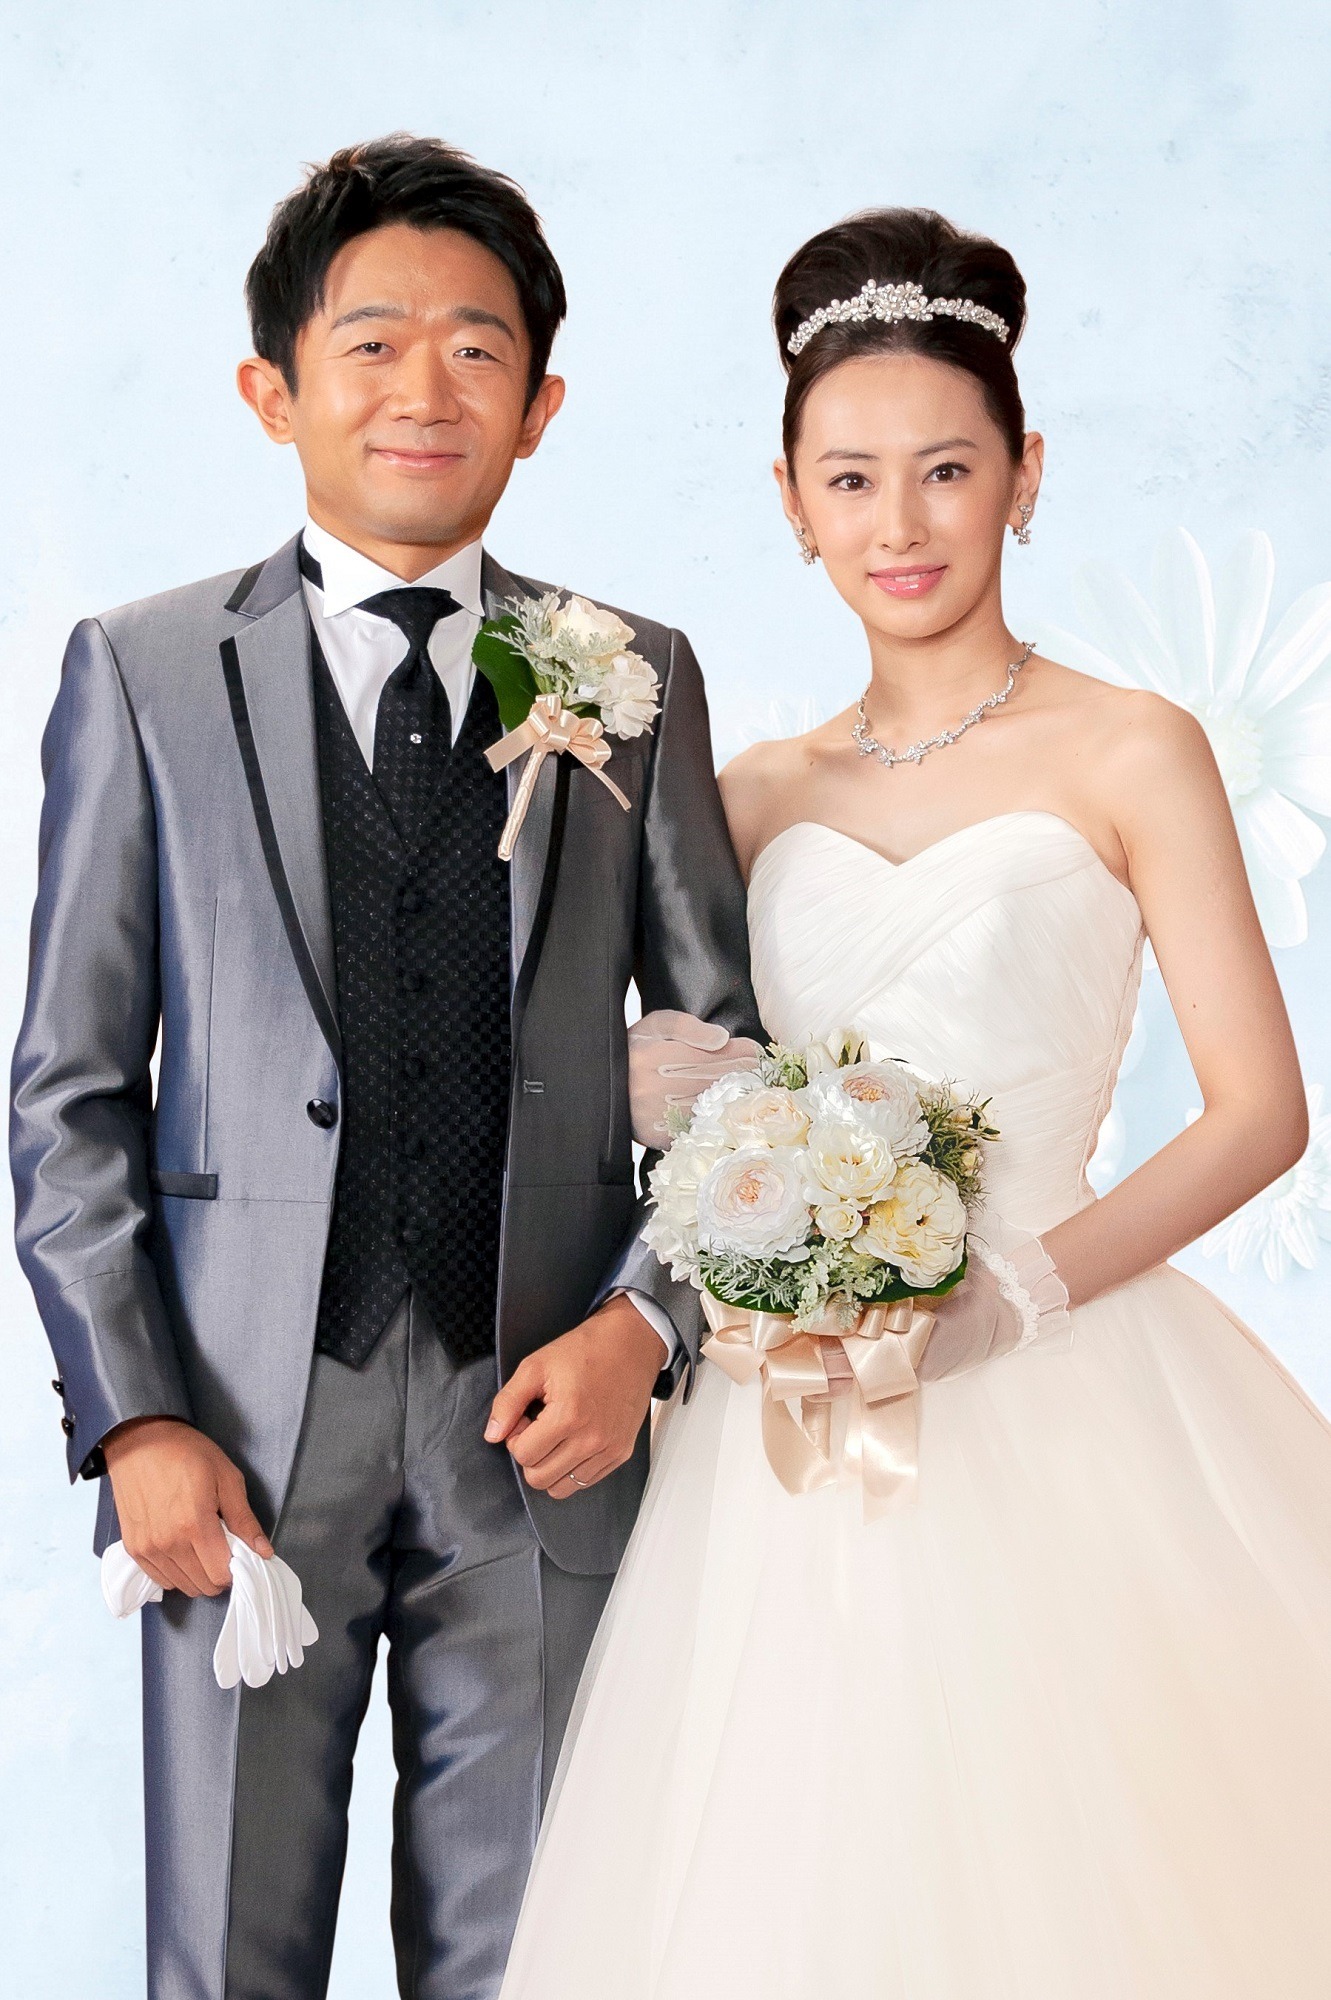 北川景子 えなりかずき 結婚式ショット公開 夫 Daigoに事前報告も 指定弁護士 Cinemacafe Net